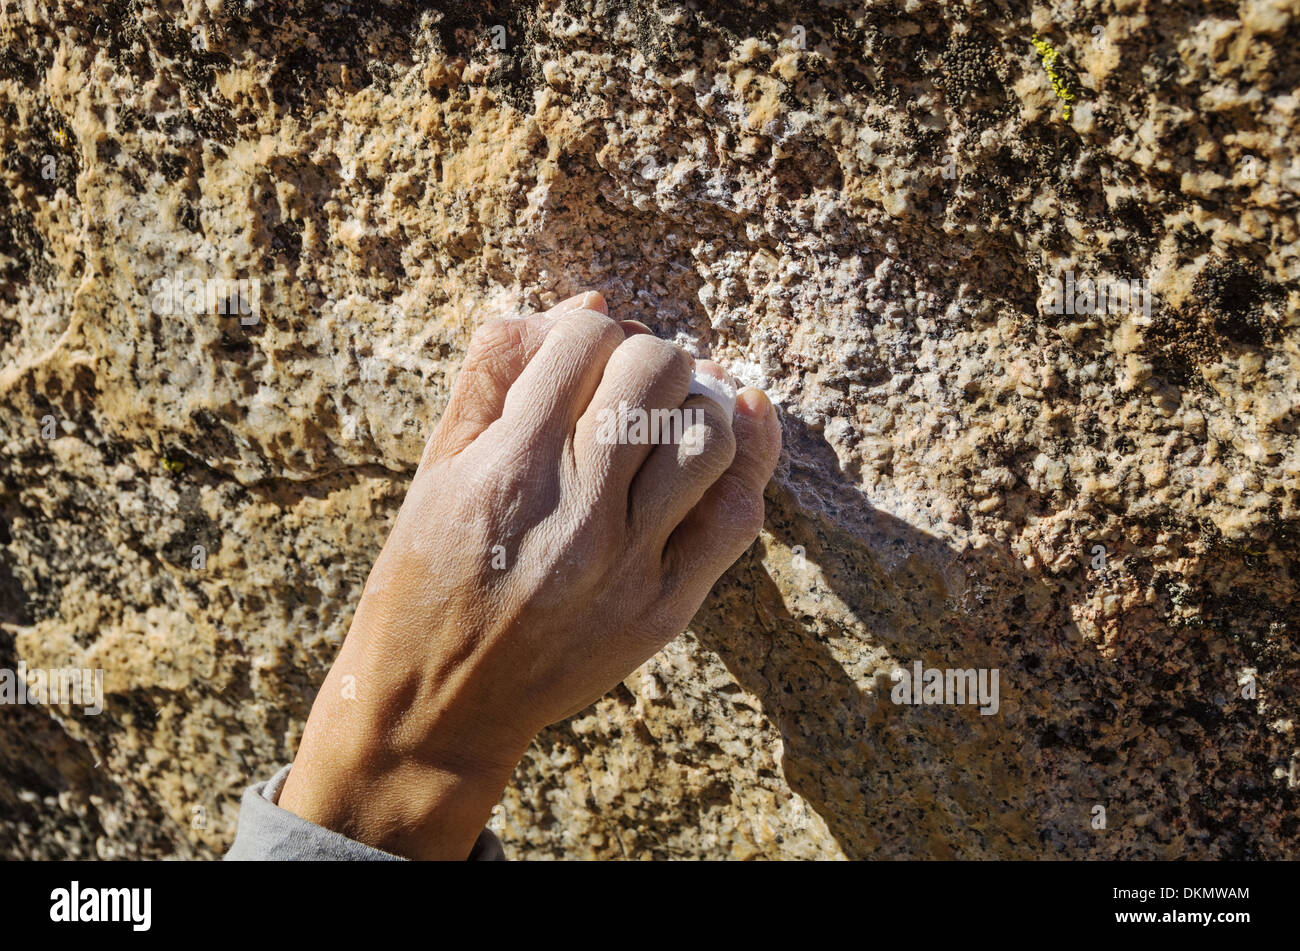 Una mujer trepadora Mano agarrando una roca pequeña espera con una empuñadura de crimpado Foto de stock